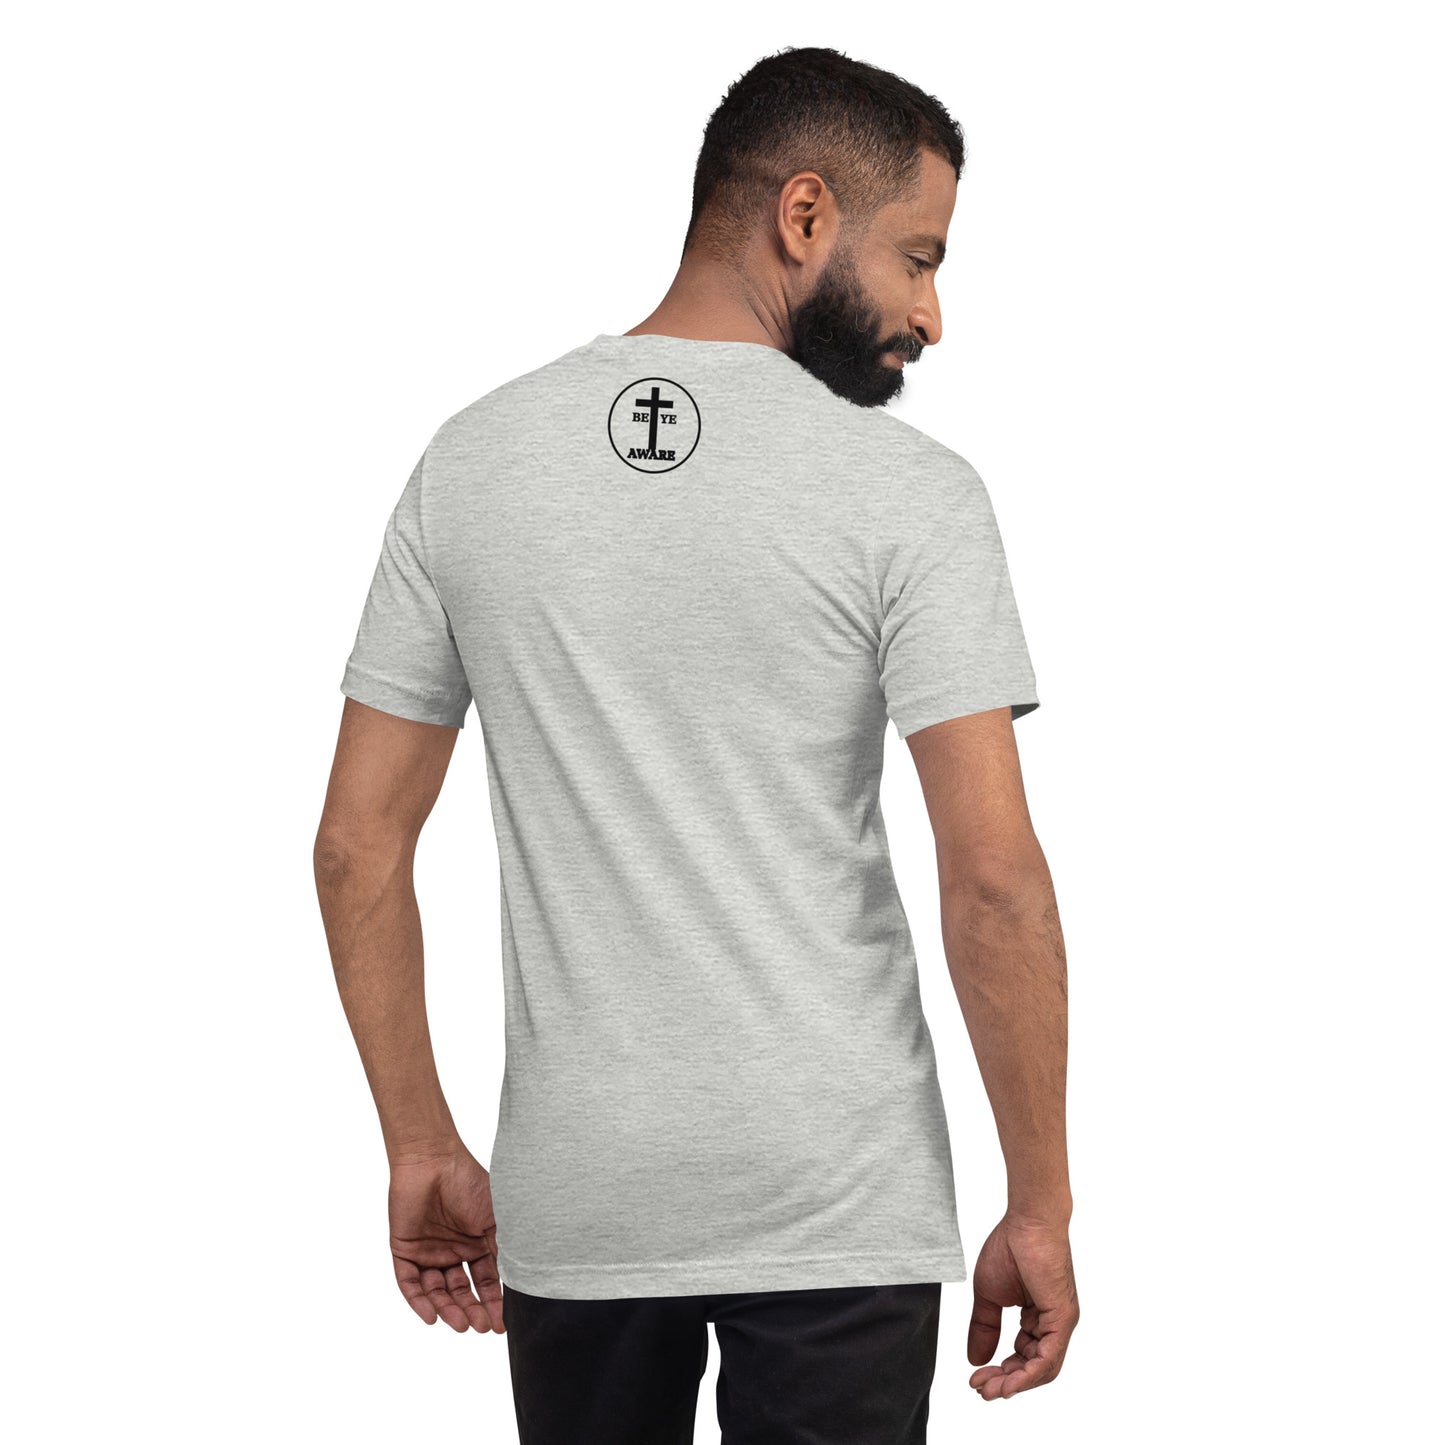 All Hail to the King Men's/Unisex T-shirt